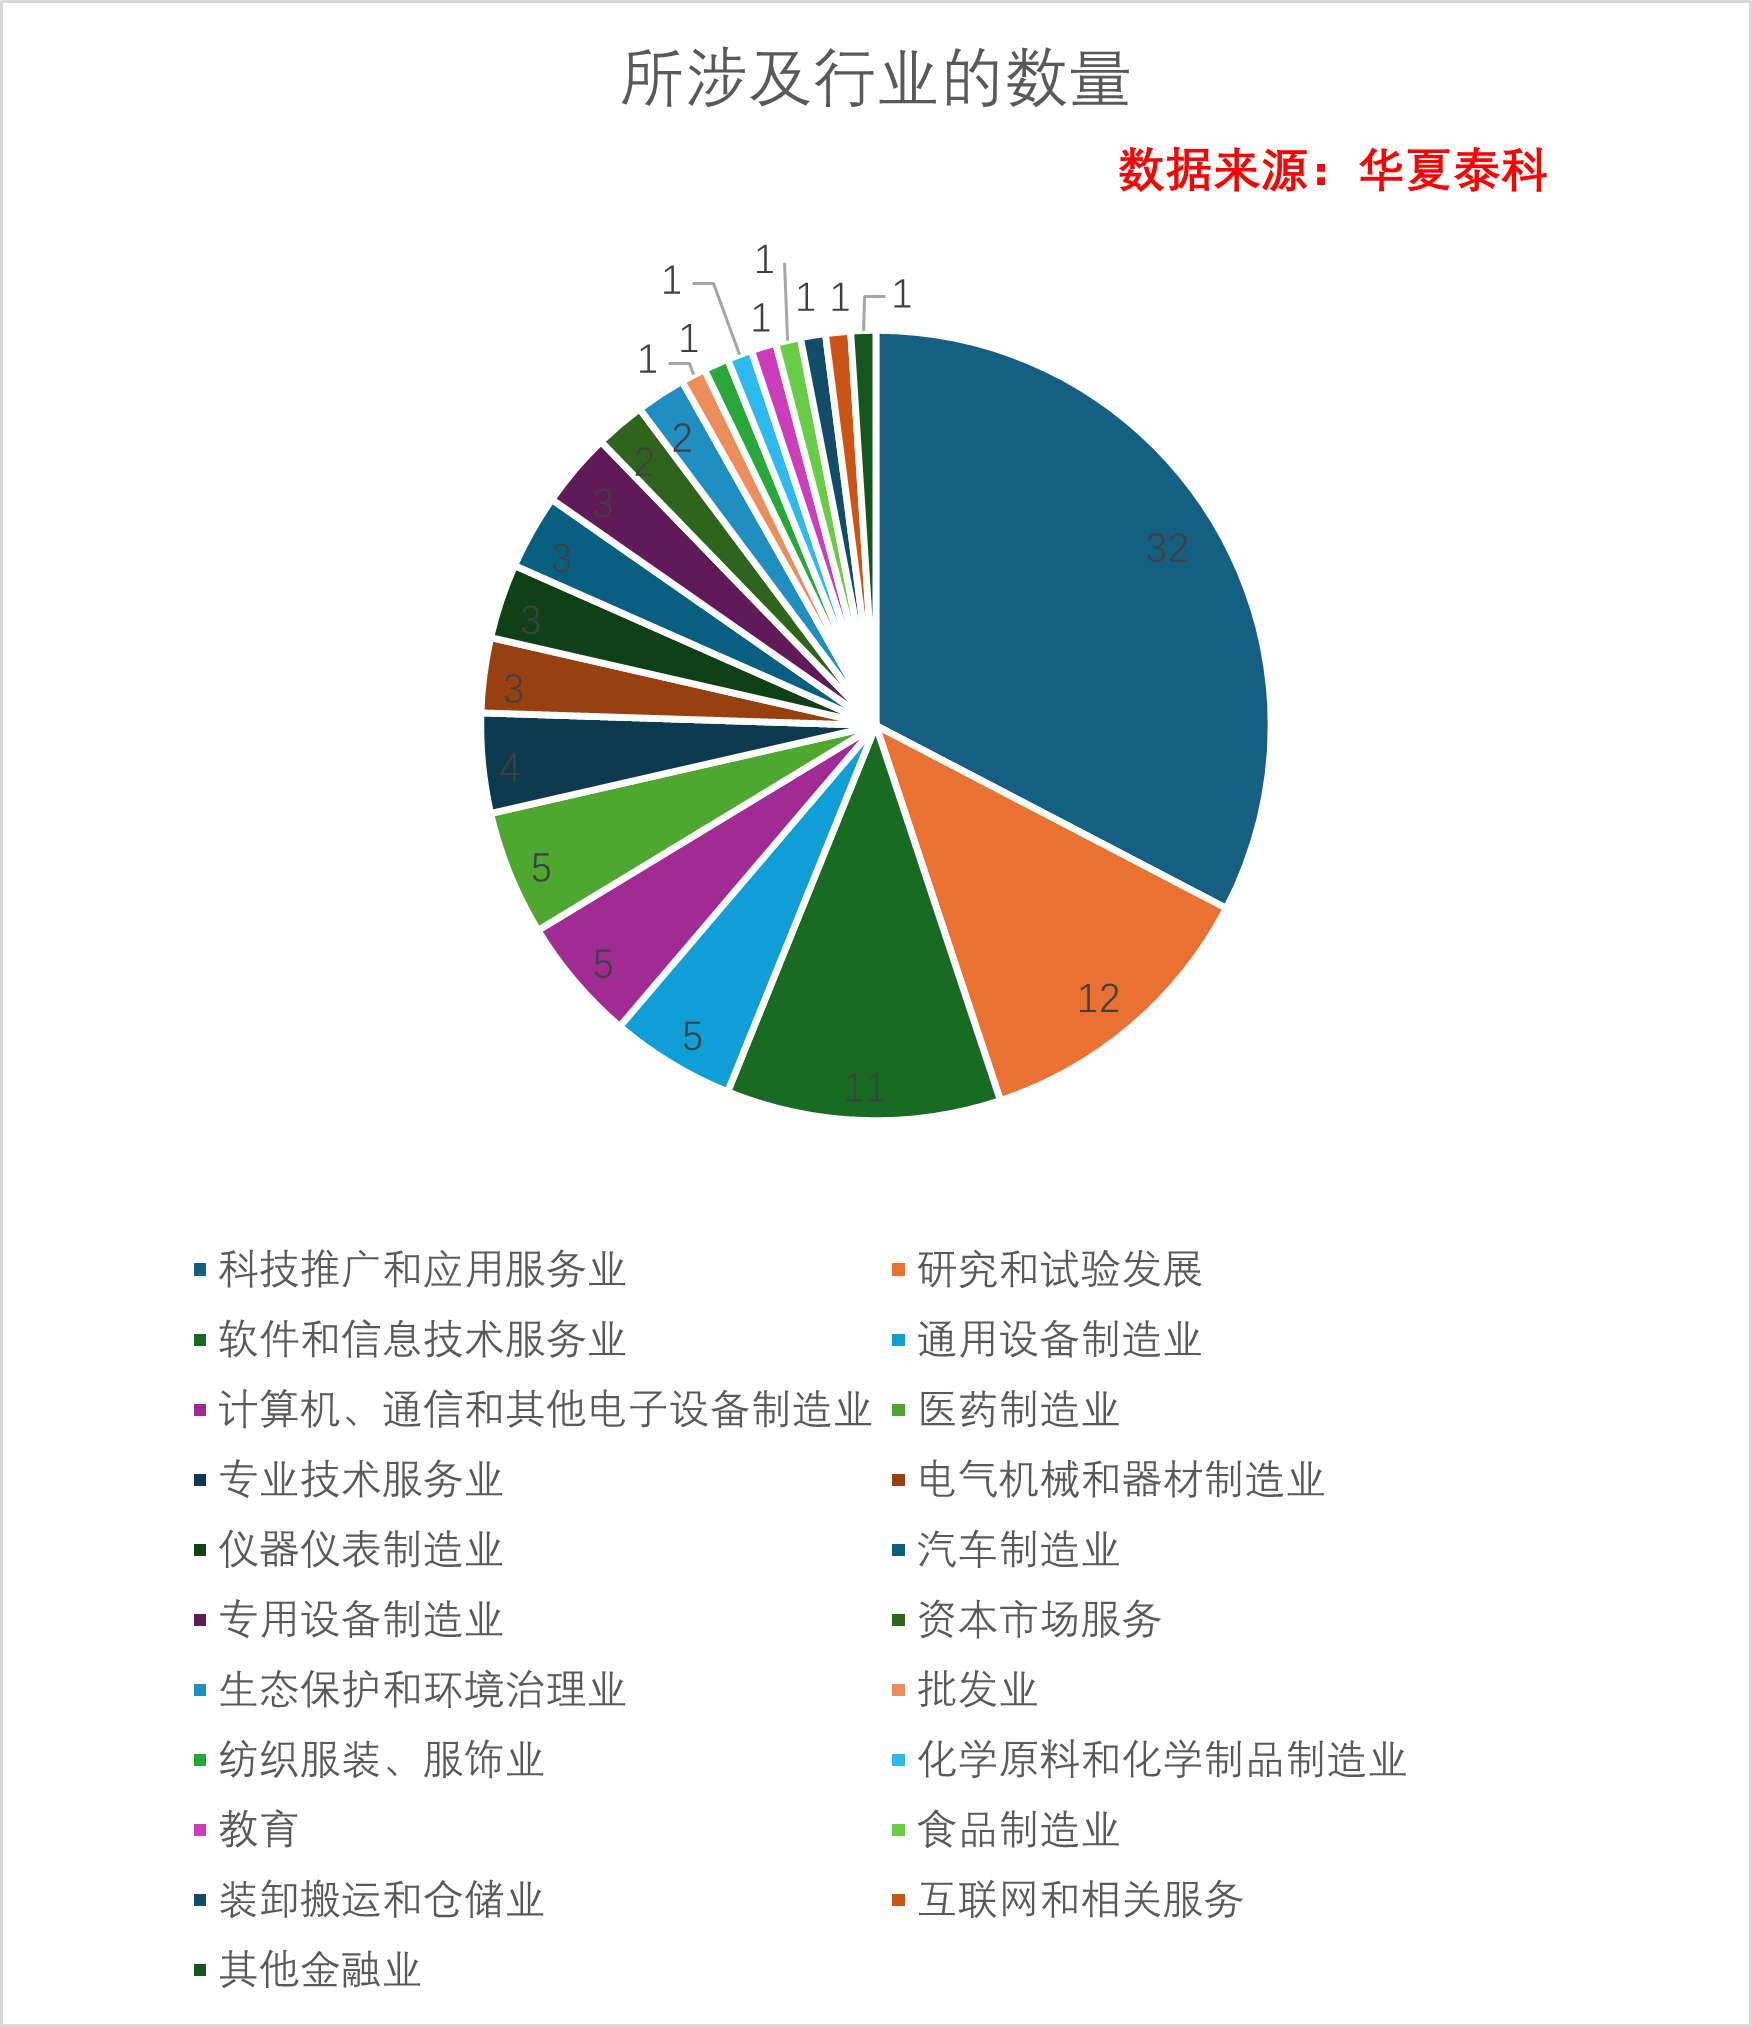 收藏丨108家北京市外资研发中心数据调查报告